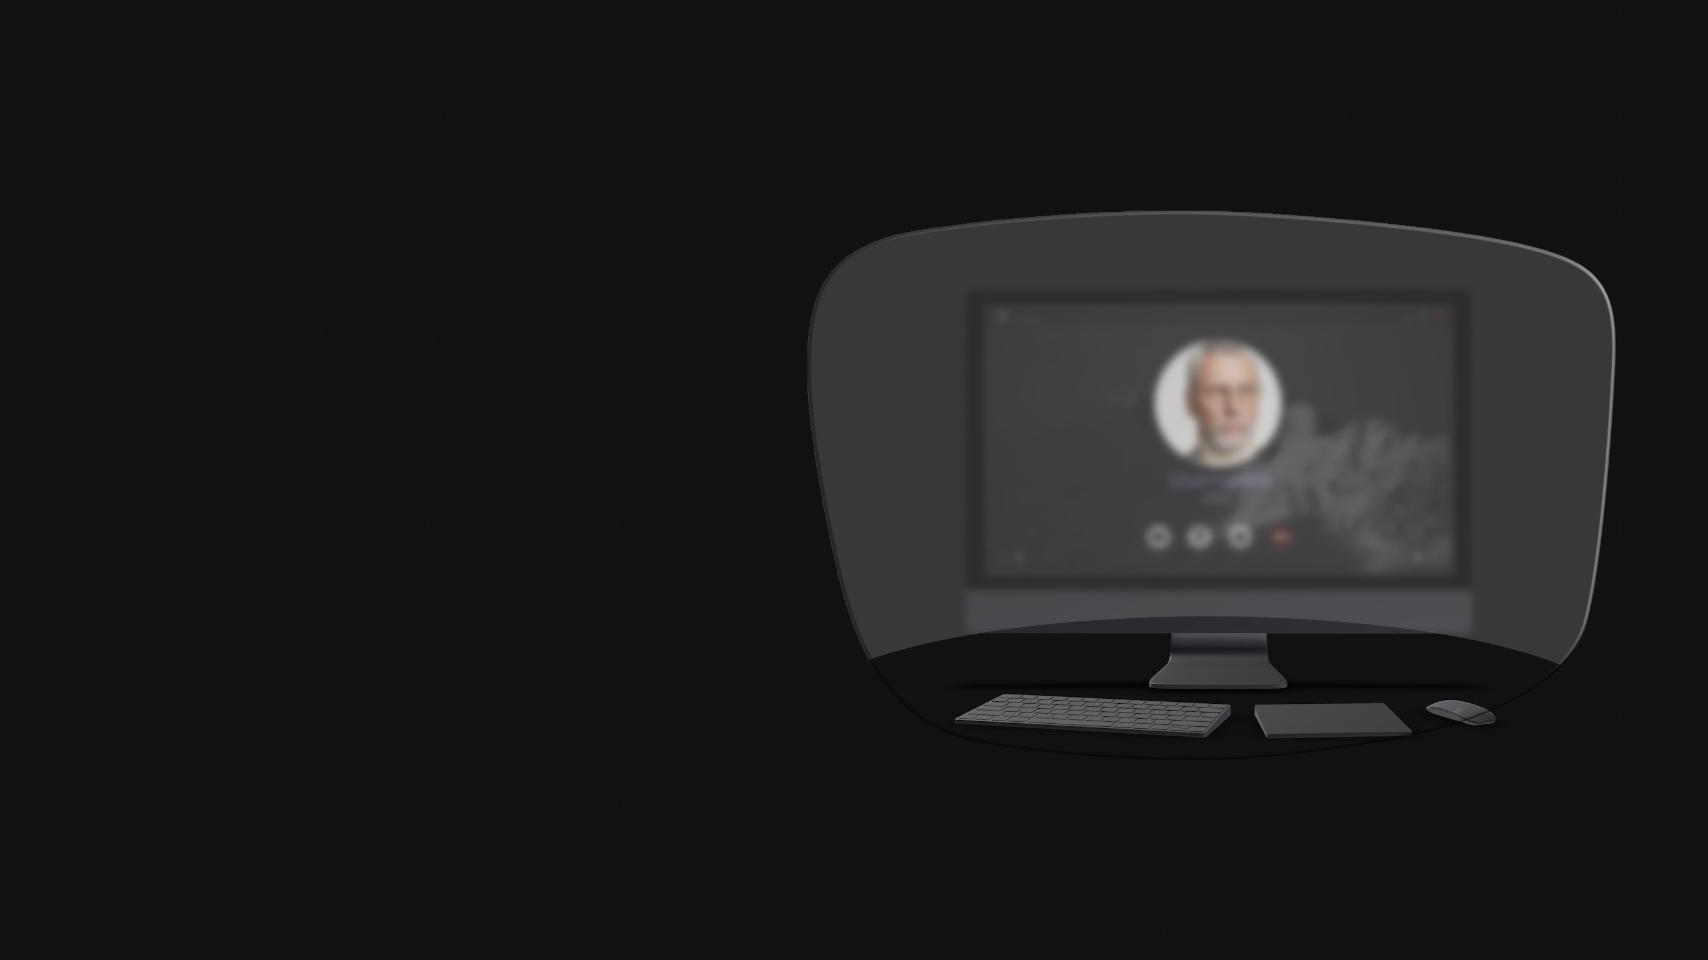 Eine schematische Darstellung, bei der der Blick durch eine Lesebrille auf einen Desktop-Computer, eine Tastatur, eine Computer-Maus und ein Buch gerichtet wird, zeigt, dass nur Objekte in nächster Nähe scharf gesehen werden können. Der Computerbildschirm ist verschwommen.